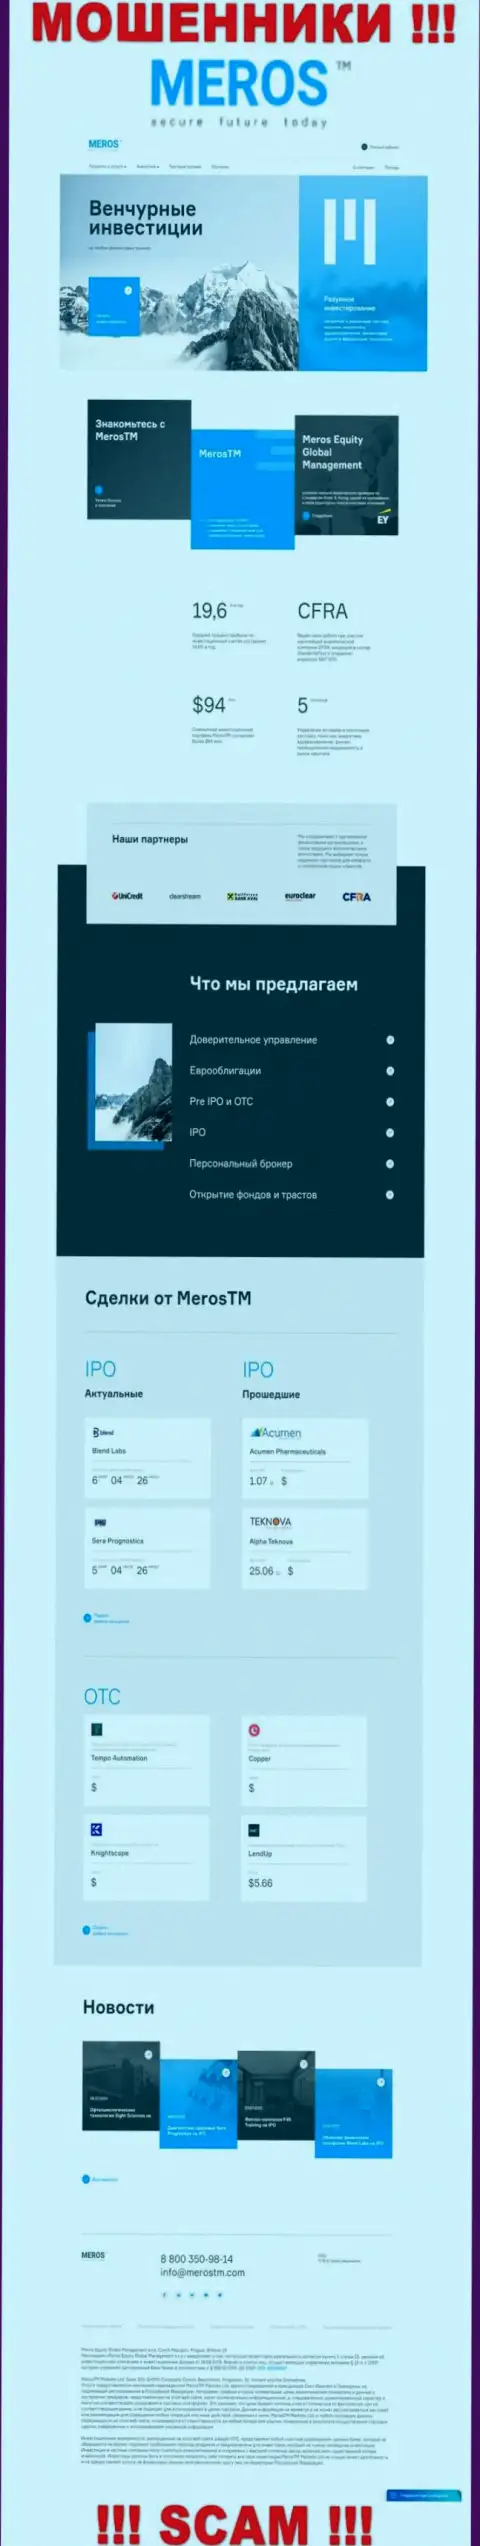 Обзор официального ресурса жуликов Meros TM